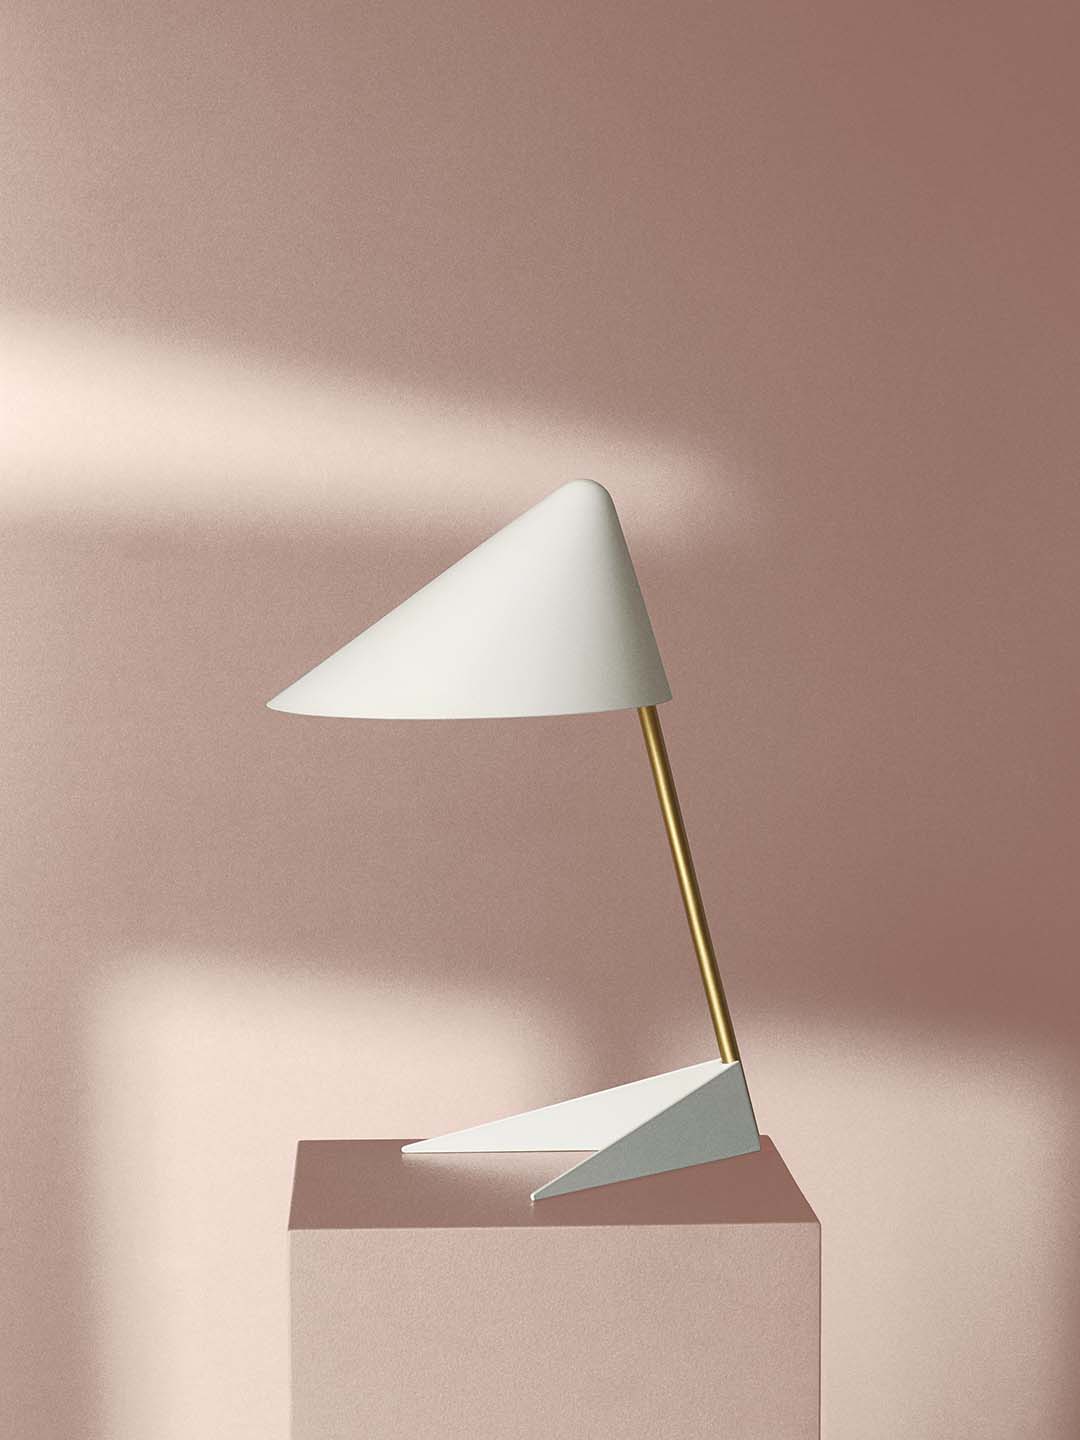 Настольная лампа Warm Nordic Ambience теплого белого цвета с латунной ножкой на светло-розовом фоне